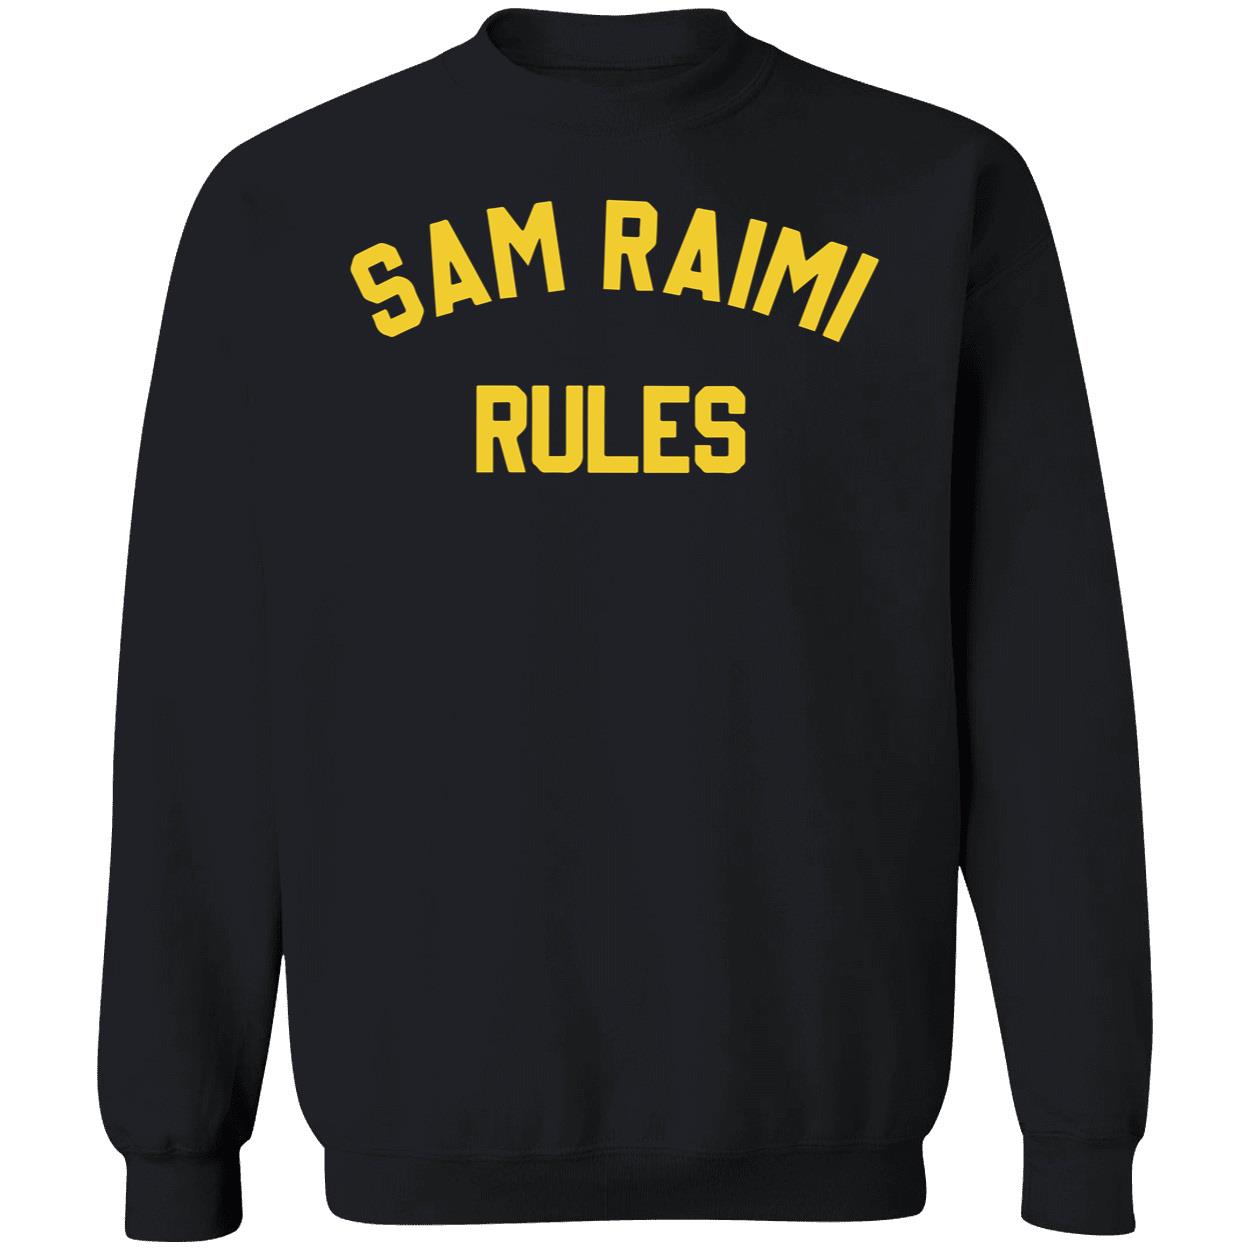 Sam Raimi Rules Shirt